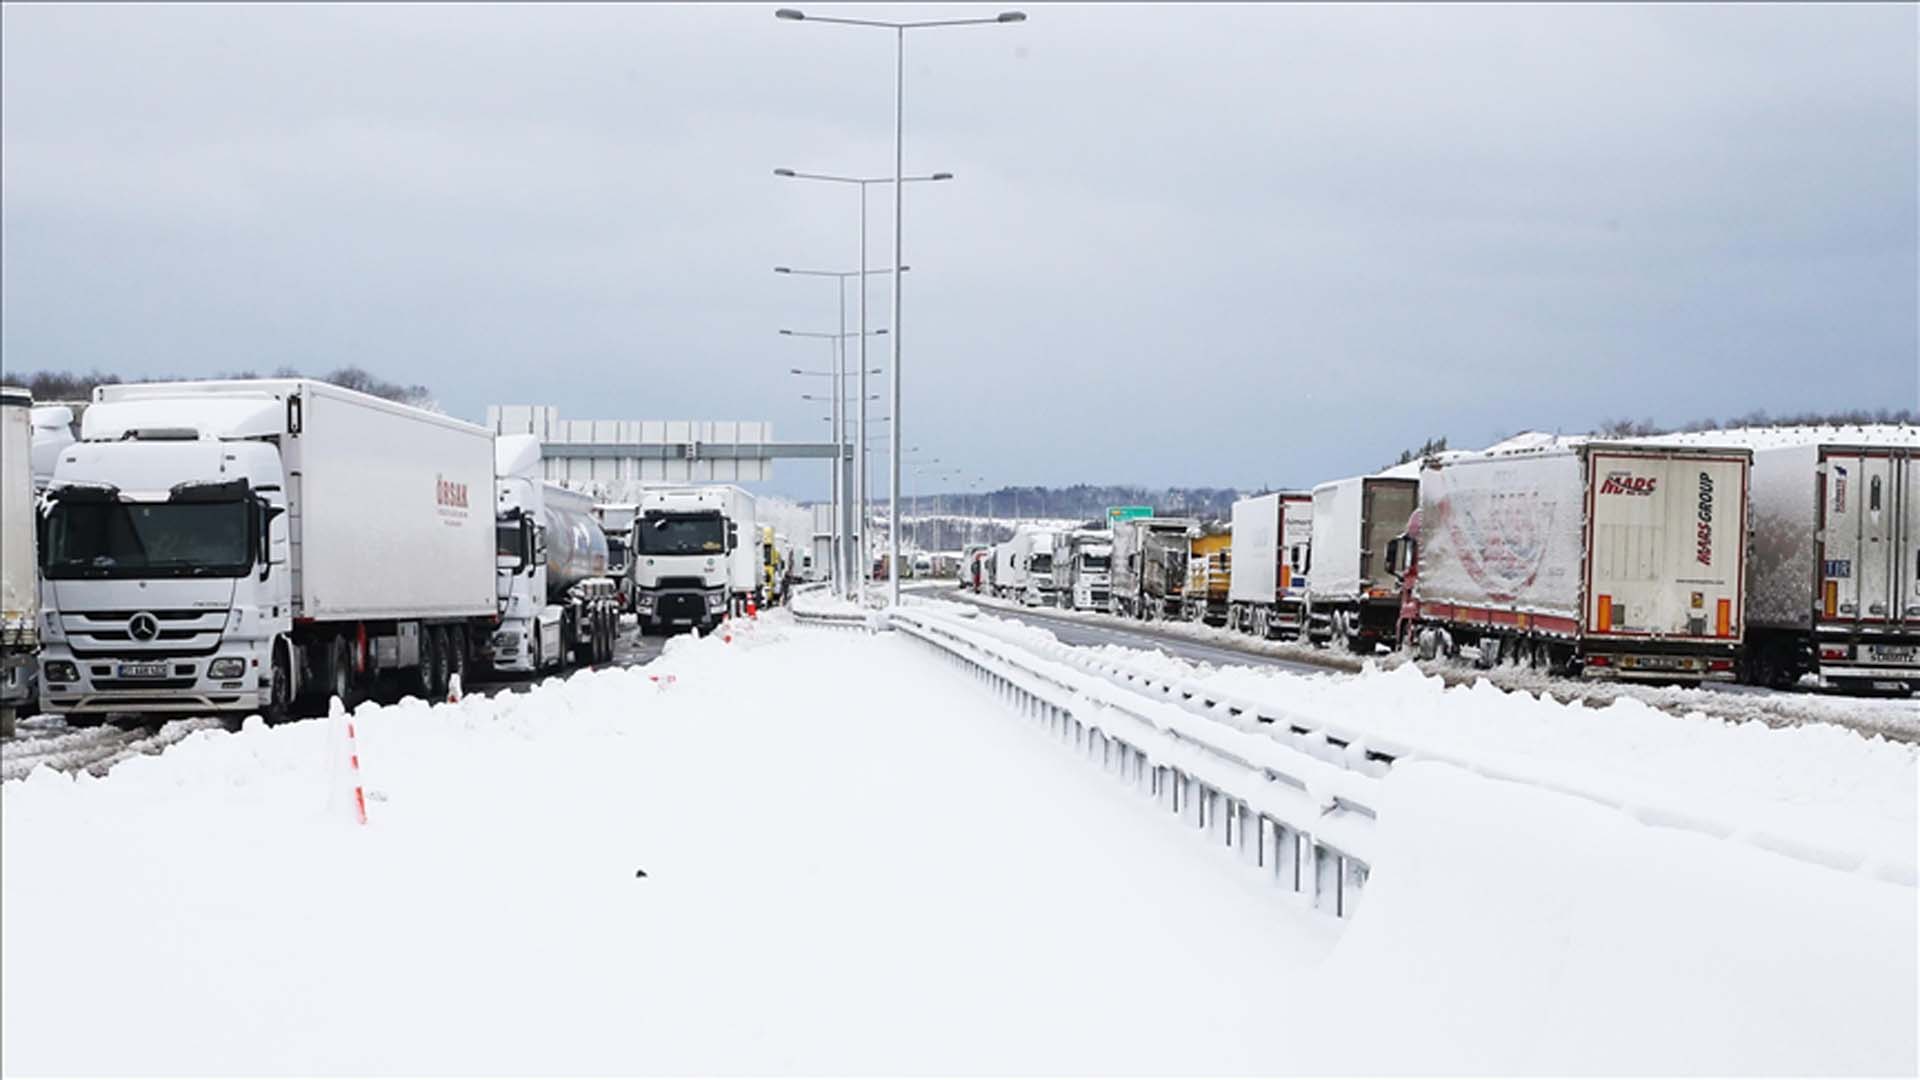 Son dakika | Ulaştırma Bakanlığından Kuzey Marmara Otoyolu'nu işleten firmaya kar yağışı cezası! Sürücülerin geçiş ücretleri iade edildi